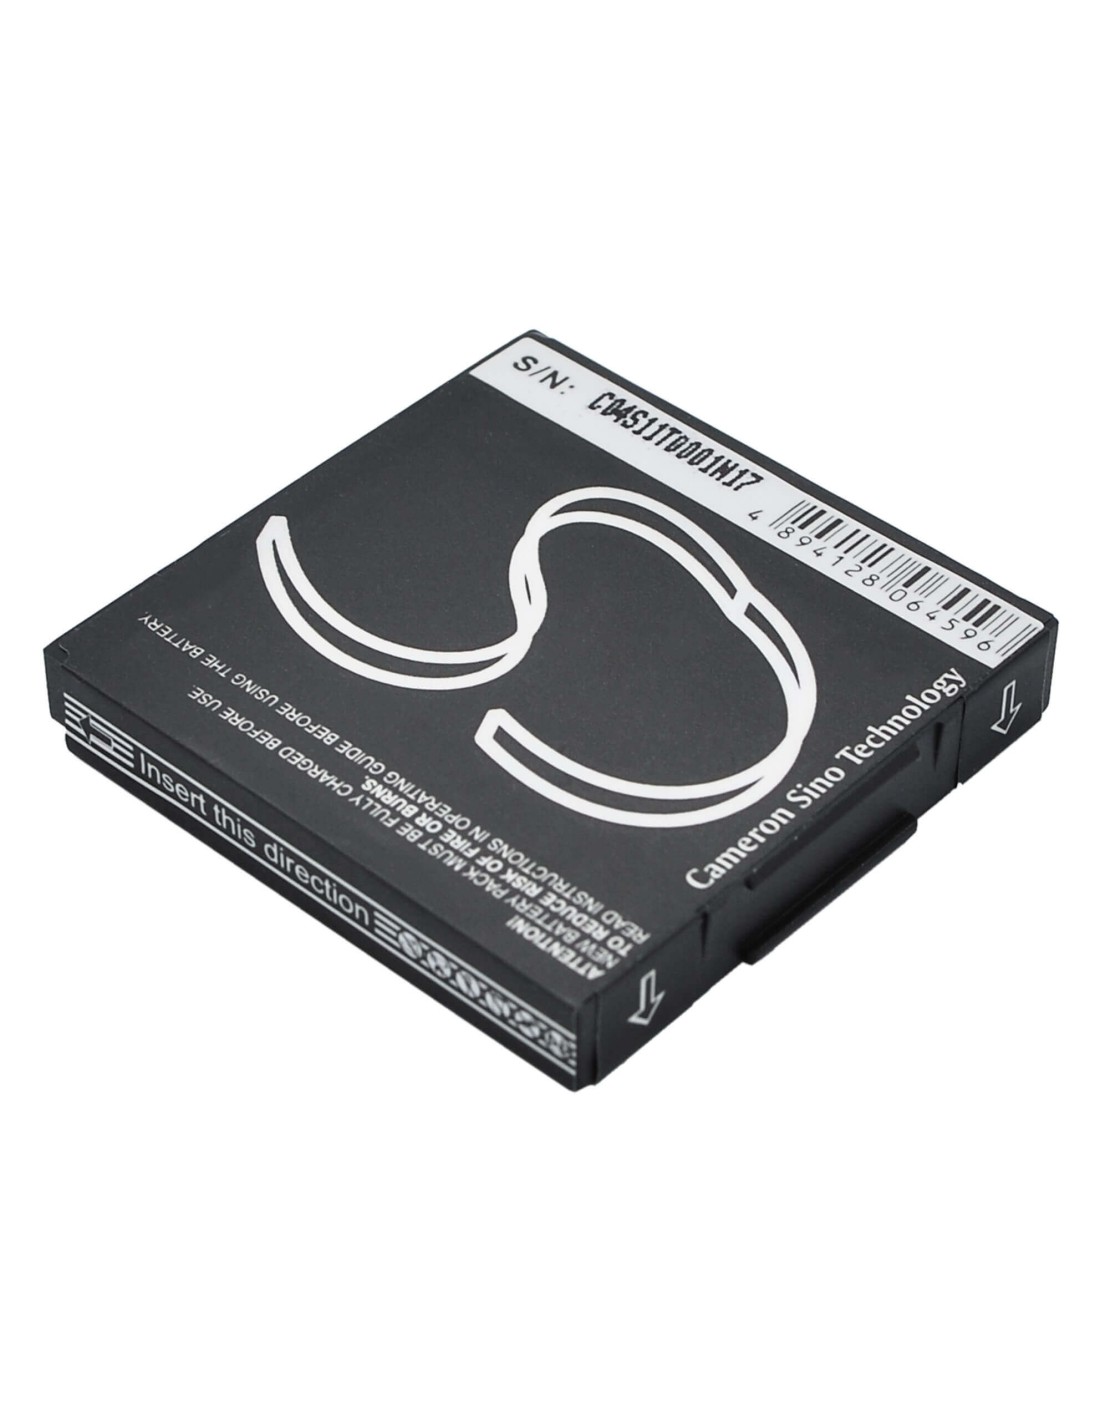 Battery for Audiovox CDM-1400, PCS-1400, PPC-1400 3.7V, 600mAh - 2.22Wh